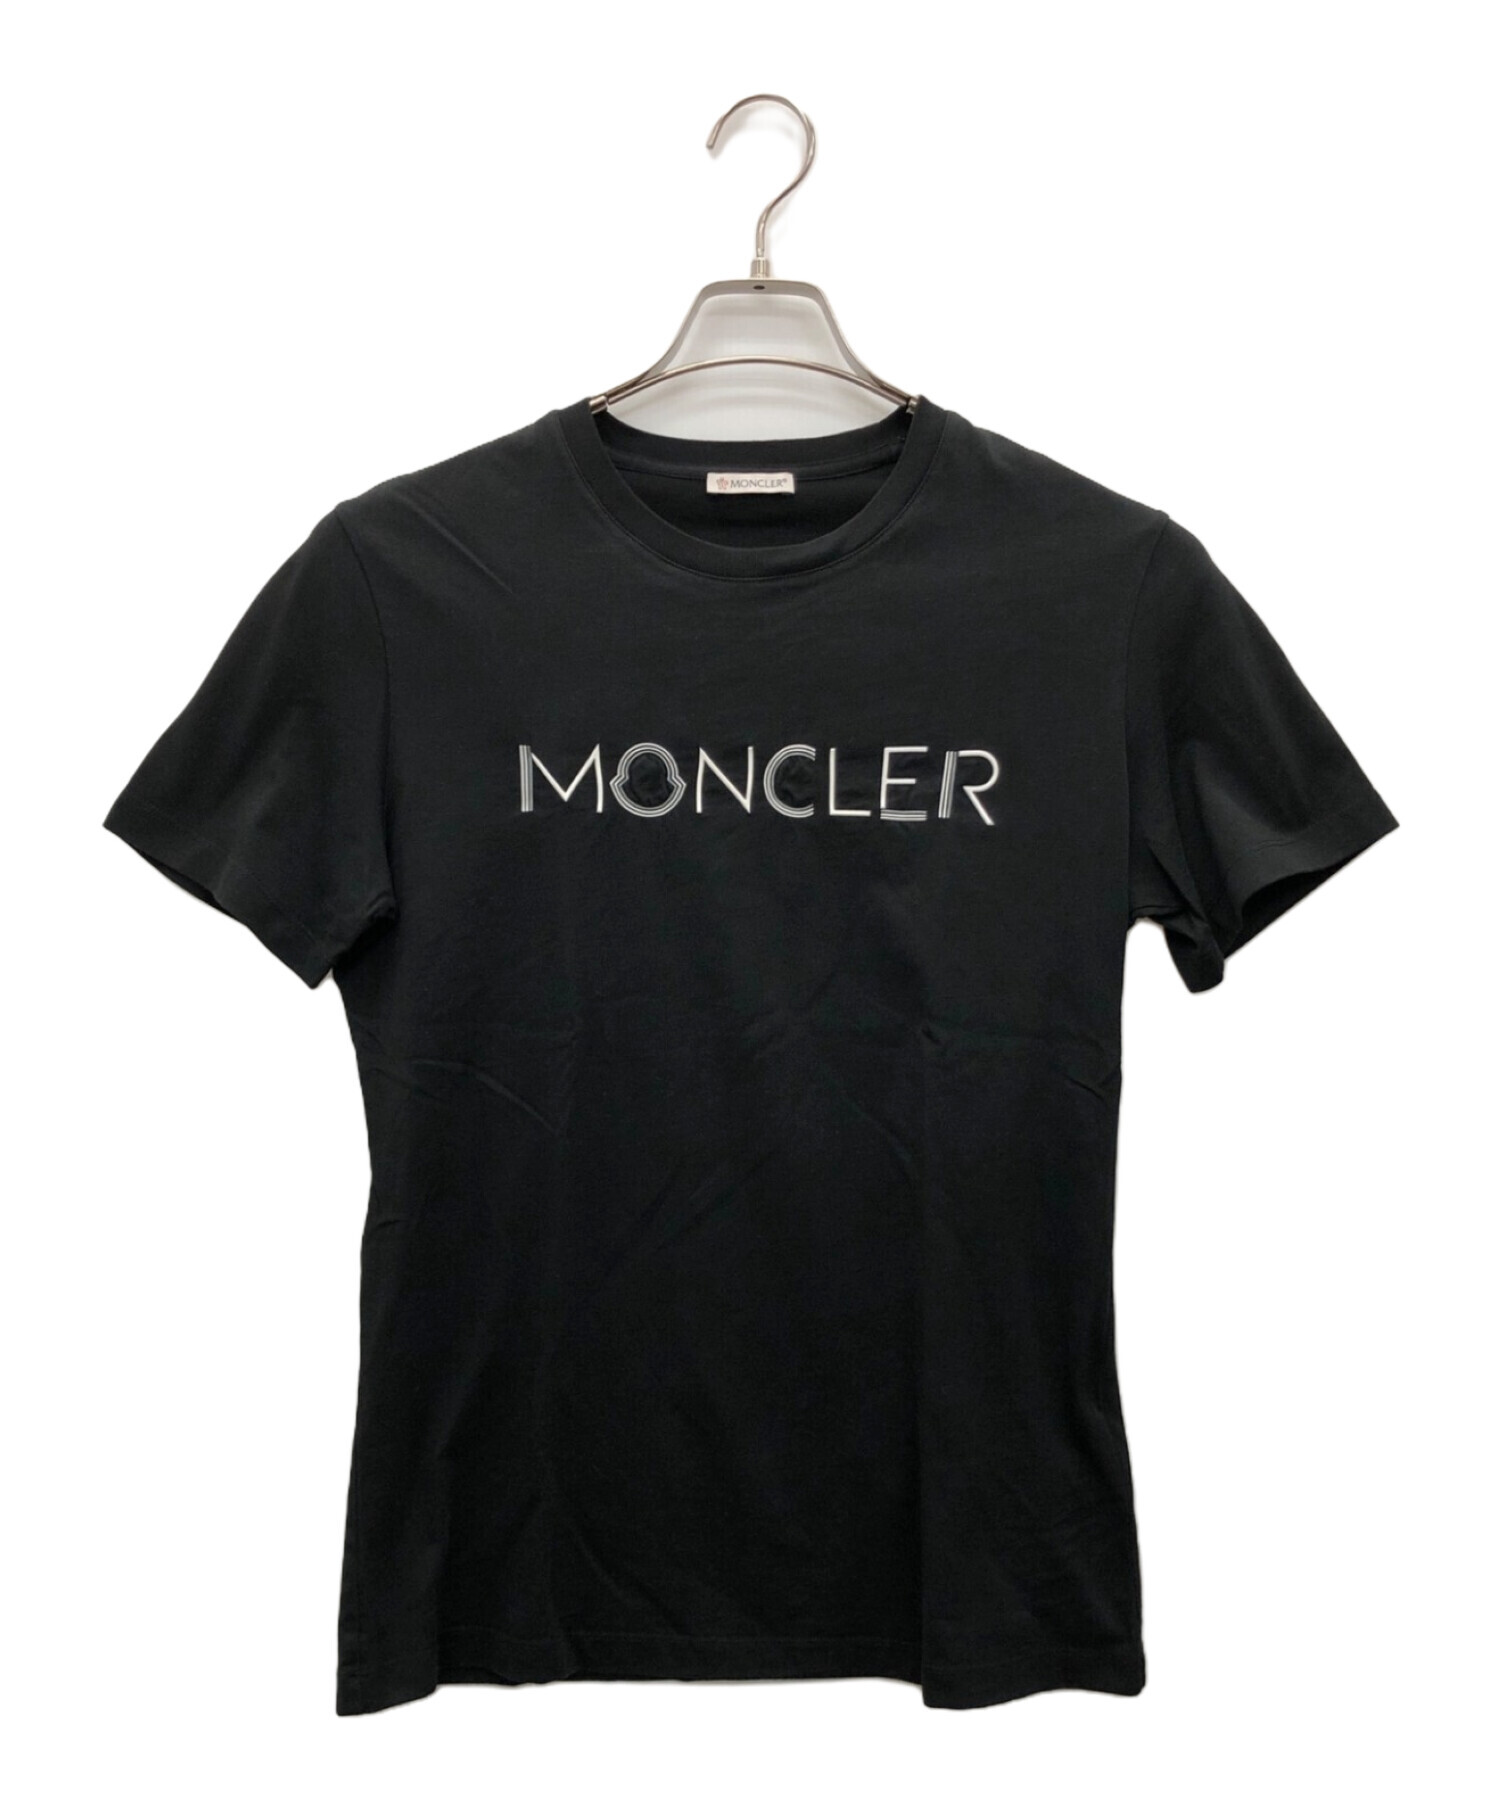 MONCLER (モンクレール) Tシャツ ブラック サイズ:S